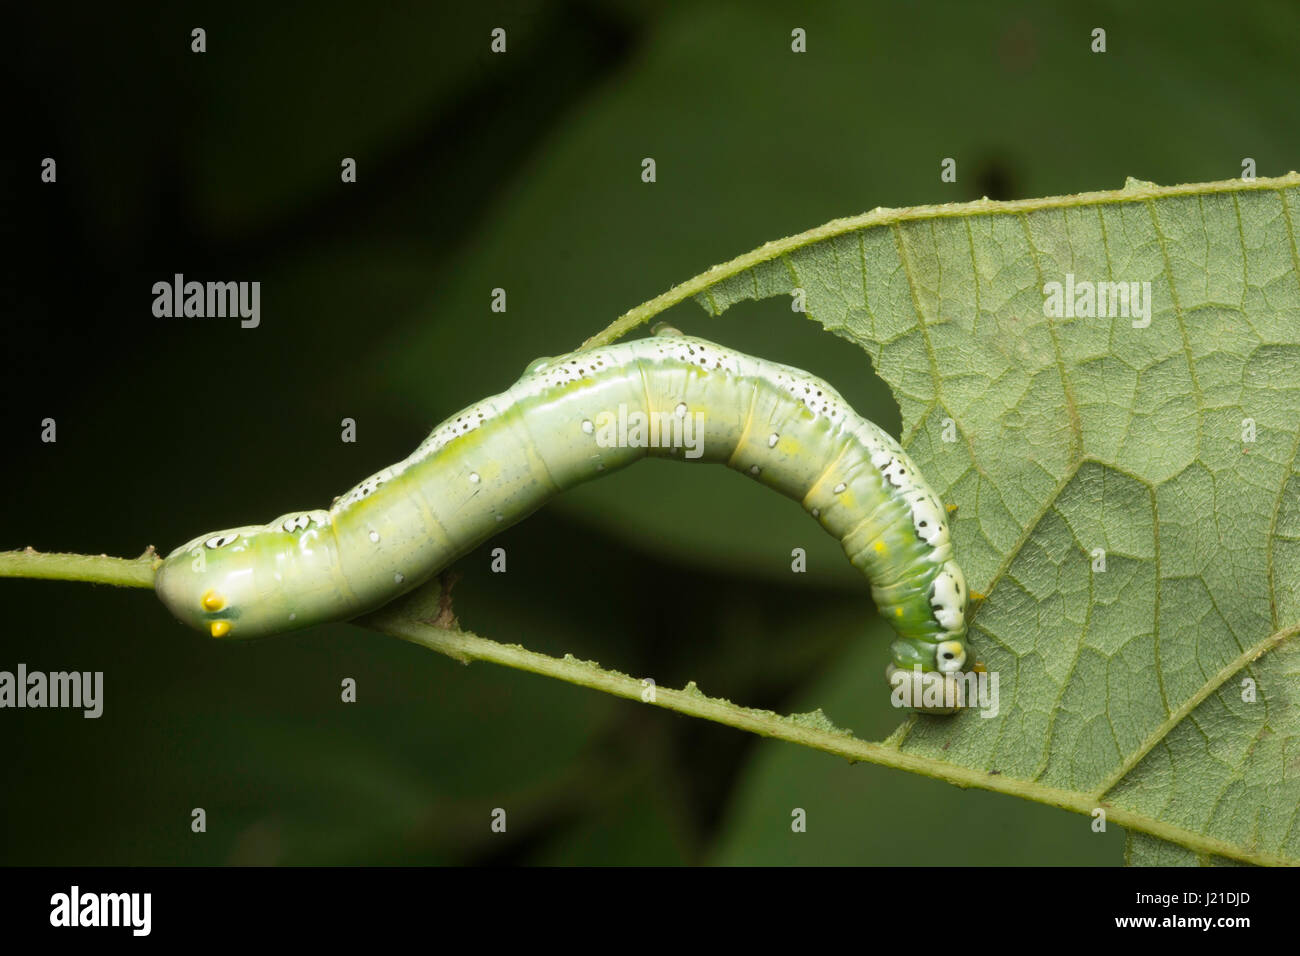 Moth caterpillar , Aarey colonia di latte , India. La falena bruchi sono alimentatori vorace che li rende uno dei più importanti parassiti dell'agricoltura. Foto Stock